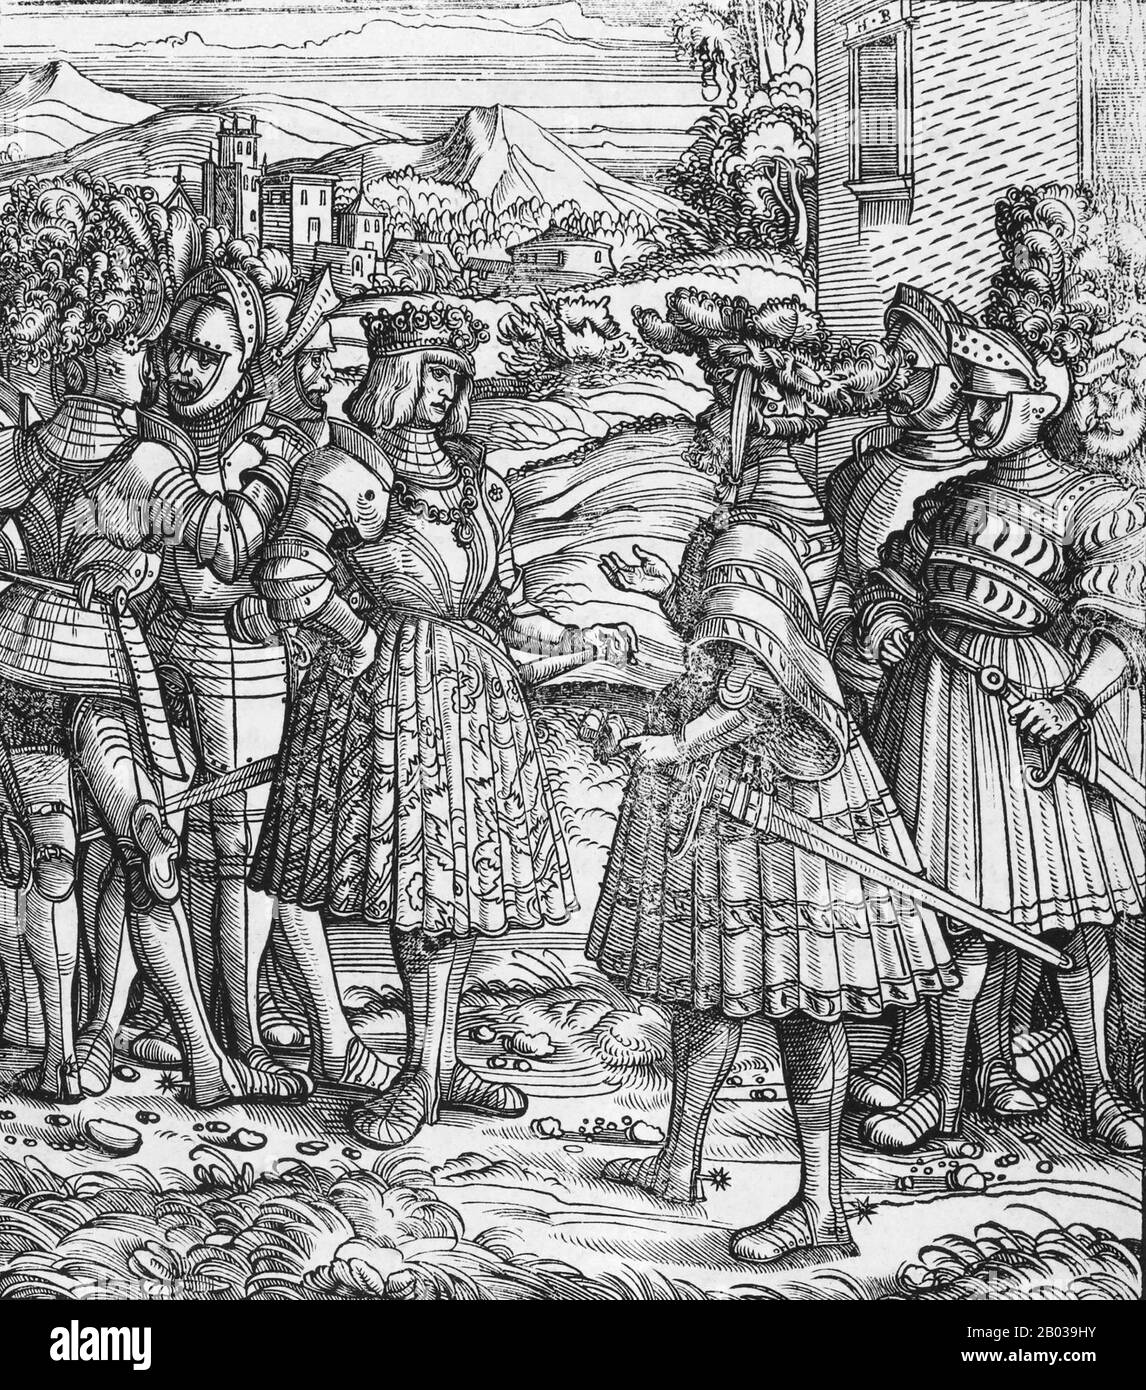 Massimiliano i (22 marzo 1459 – 12 gennaio 1519), figlio di Federico III, Sacro Romano Impero, Eleonora di Portogallo, re dei Romani (noto anche come Re dei Tedeschi) dal 1486 e Sacro Romano Imperatore dal 1508 fino alla sua morte, anche se non fu mai incoronato dal Papa, il viaggio a Roma essendo sempre troppo rischioso. Aveva governato insieme con suo padre per gli ultimi dieci anni del regno di suo padre, da c. 1483. Ampliò l'influenza della Casa d'Asburgo attraverso la guerra e il suo matrimonio nel 1477 a Maria di Borgogna, erede del Ducato di Borgogna, ma perse anche l'Aus Foto Stock